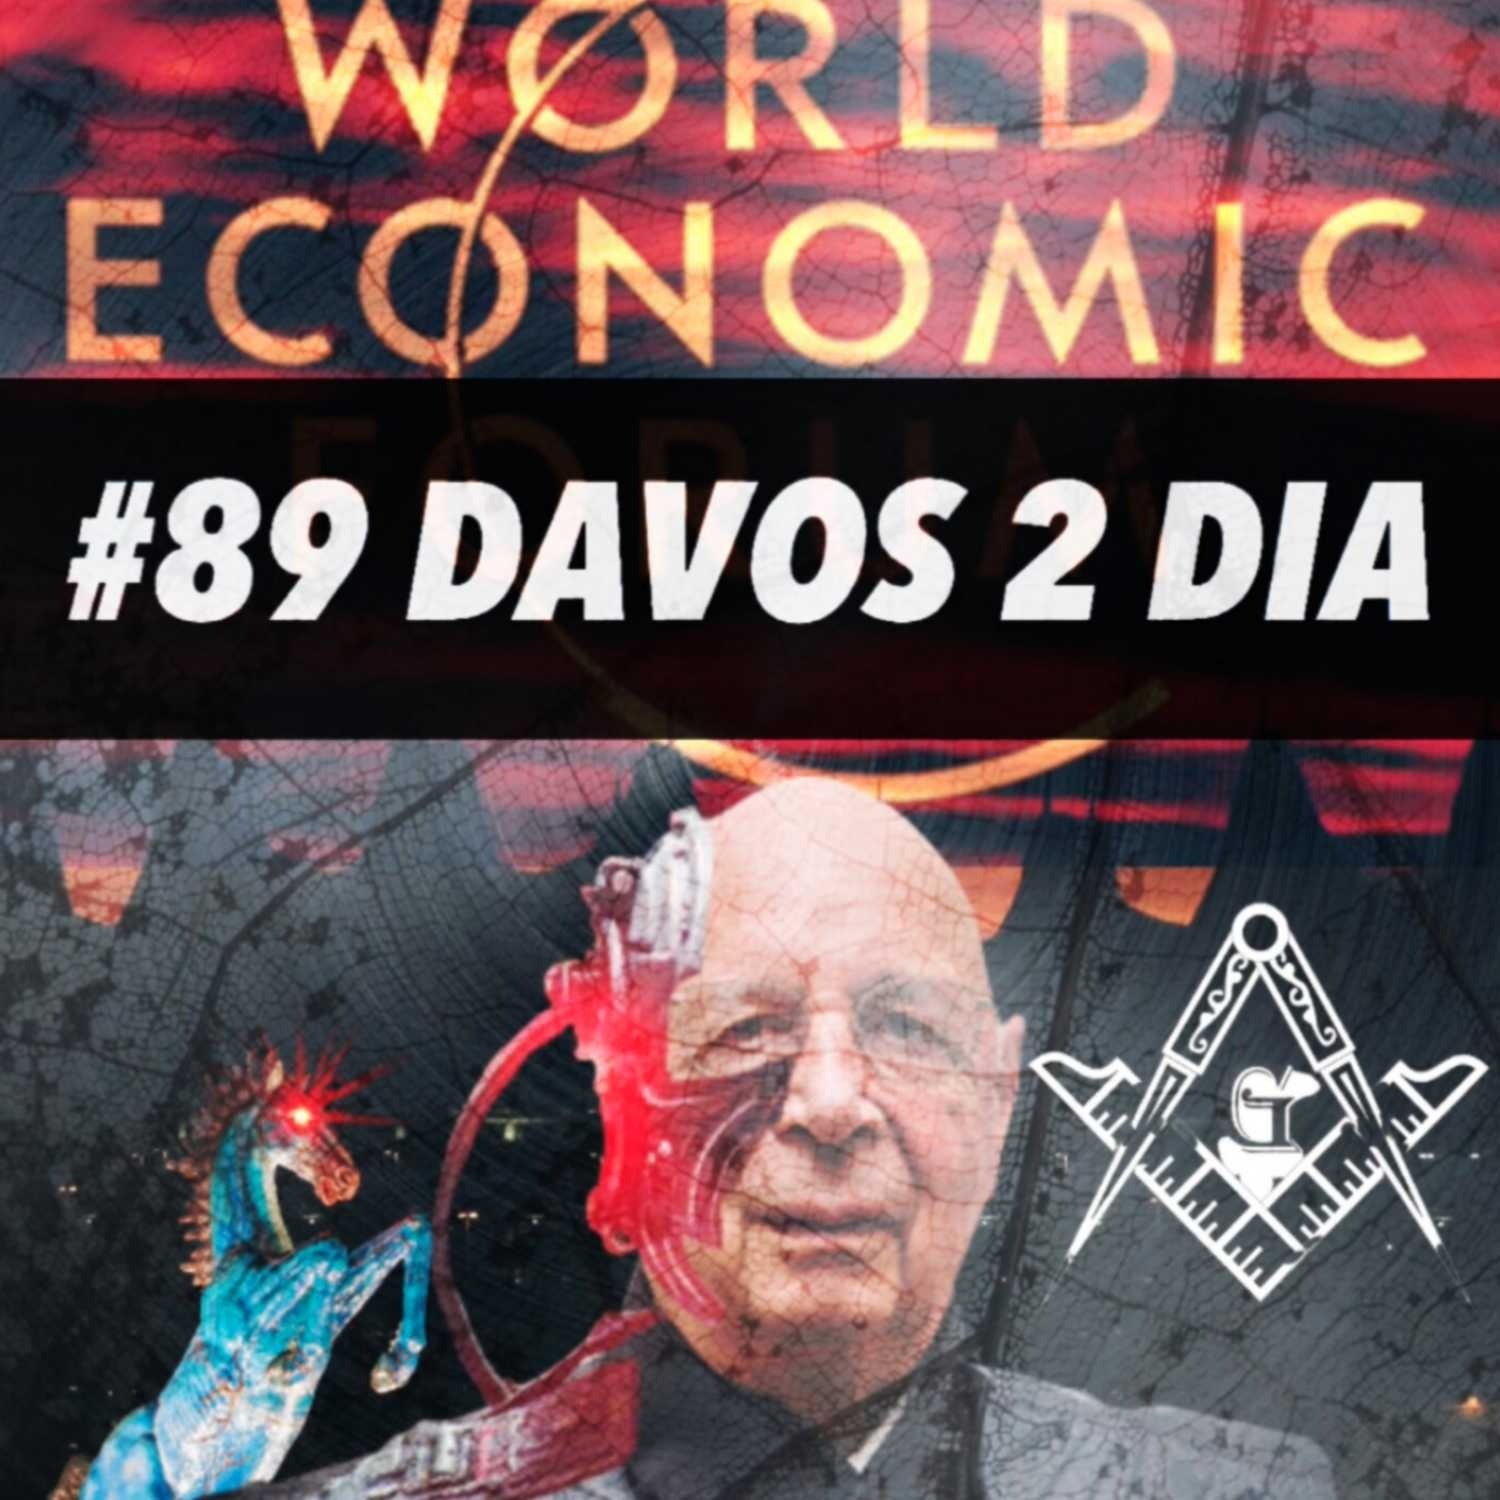 #89 “DAVOS 2 DIA”